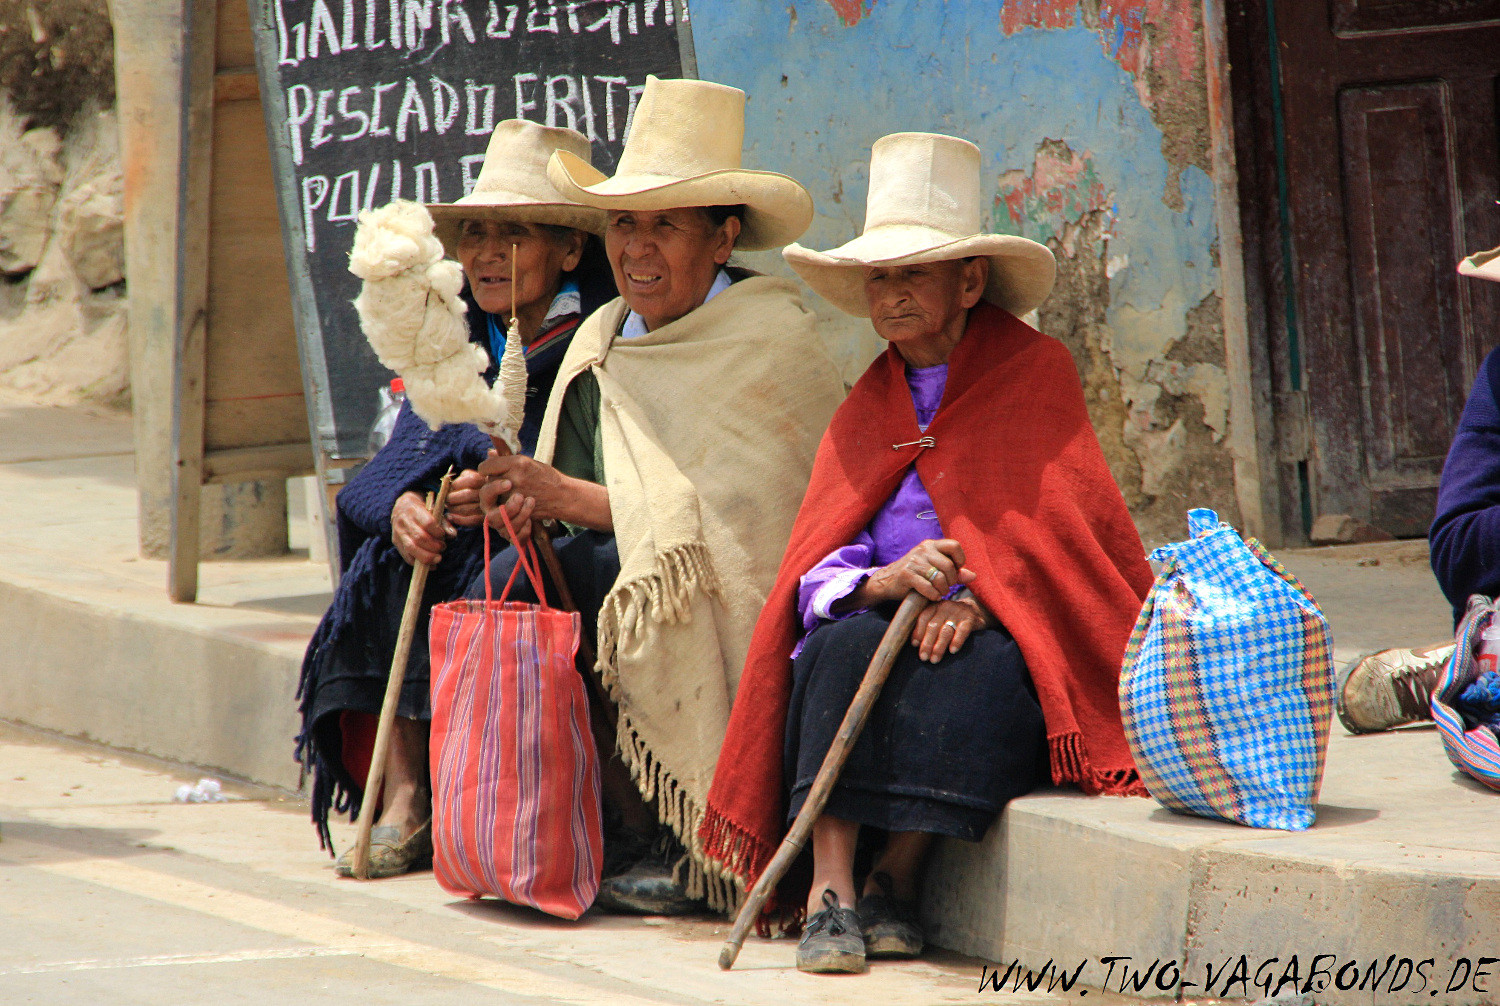 PERU 2015 - INDIGENAS IN ENCANADA